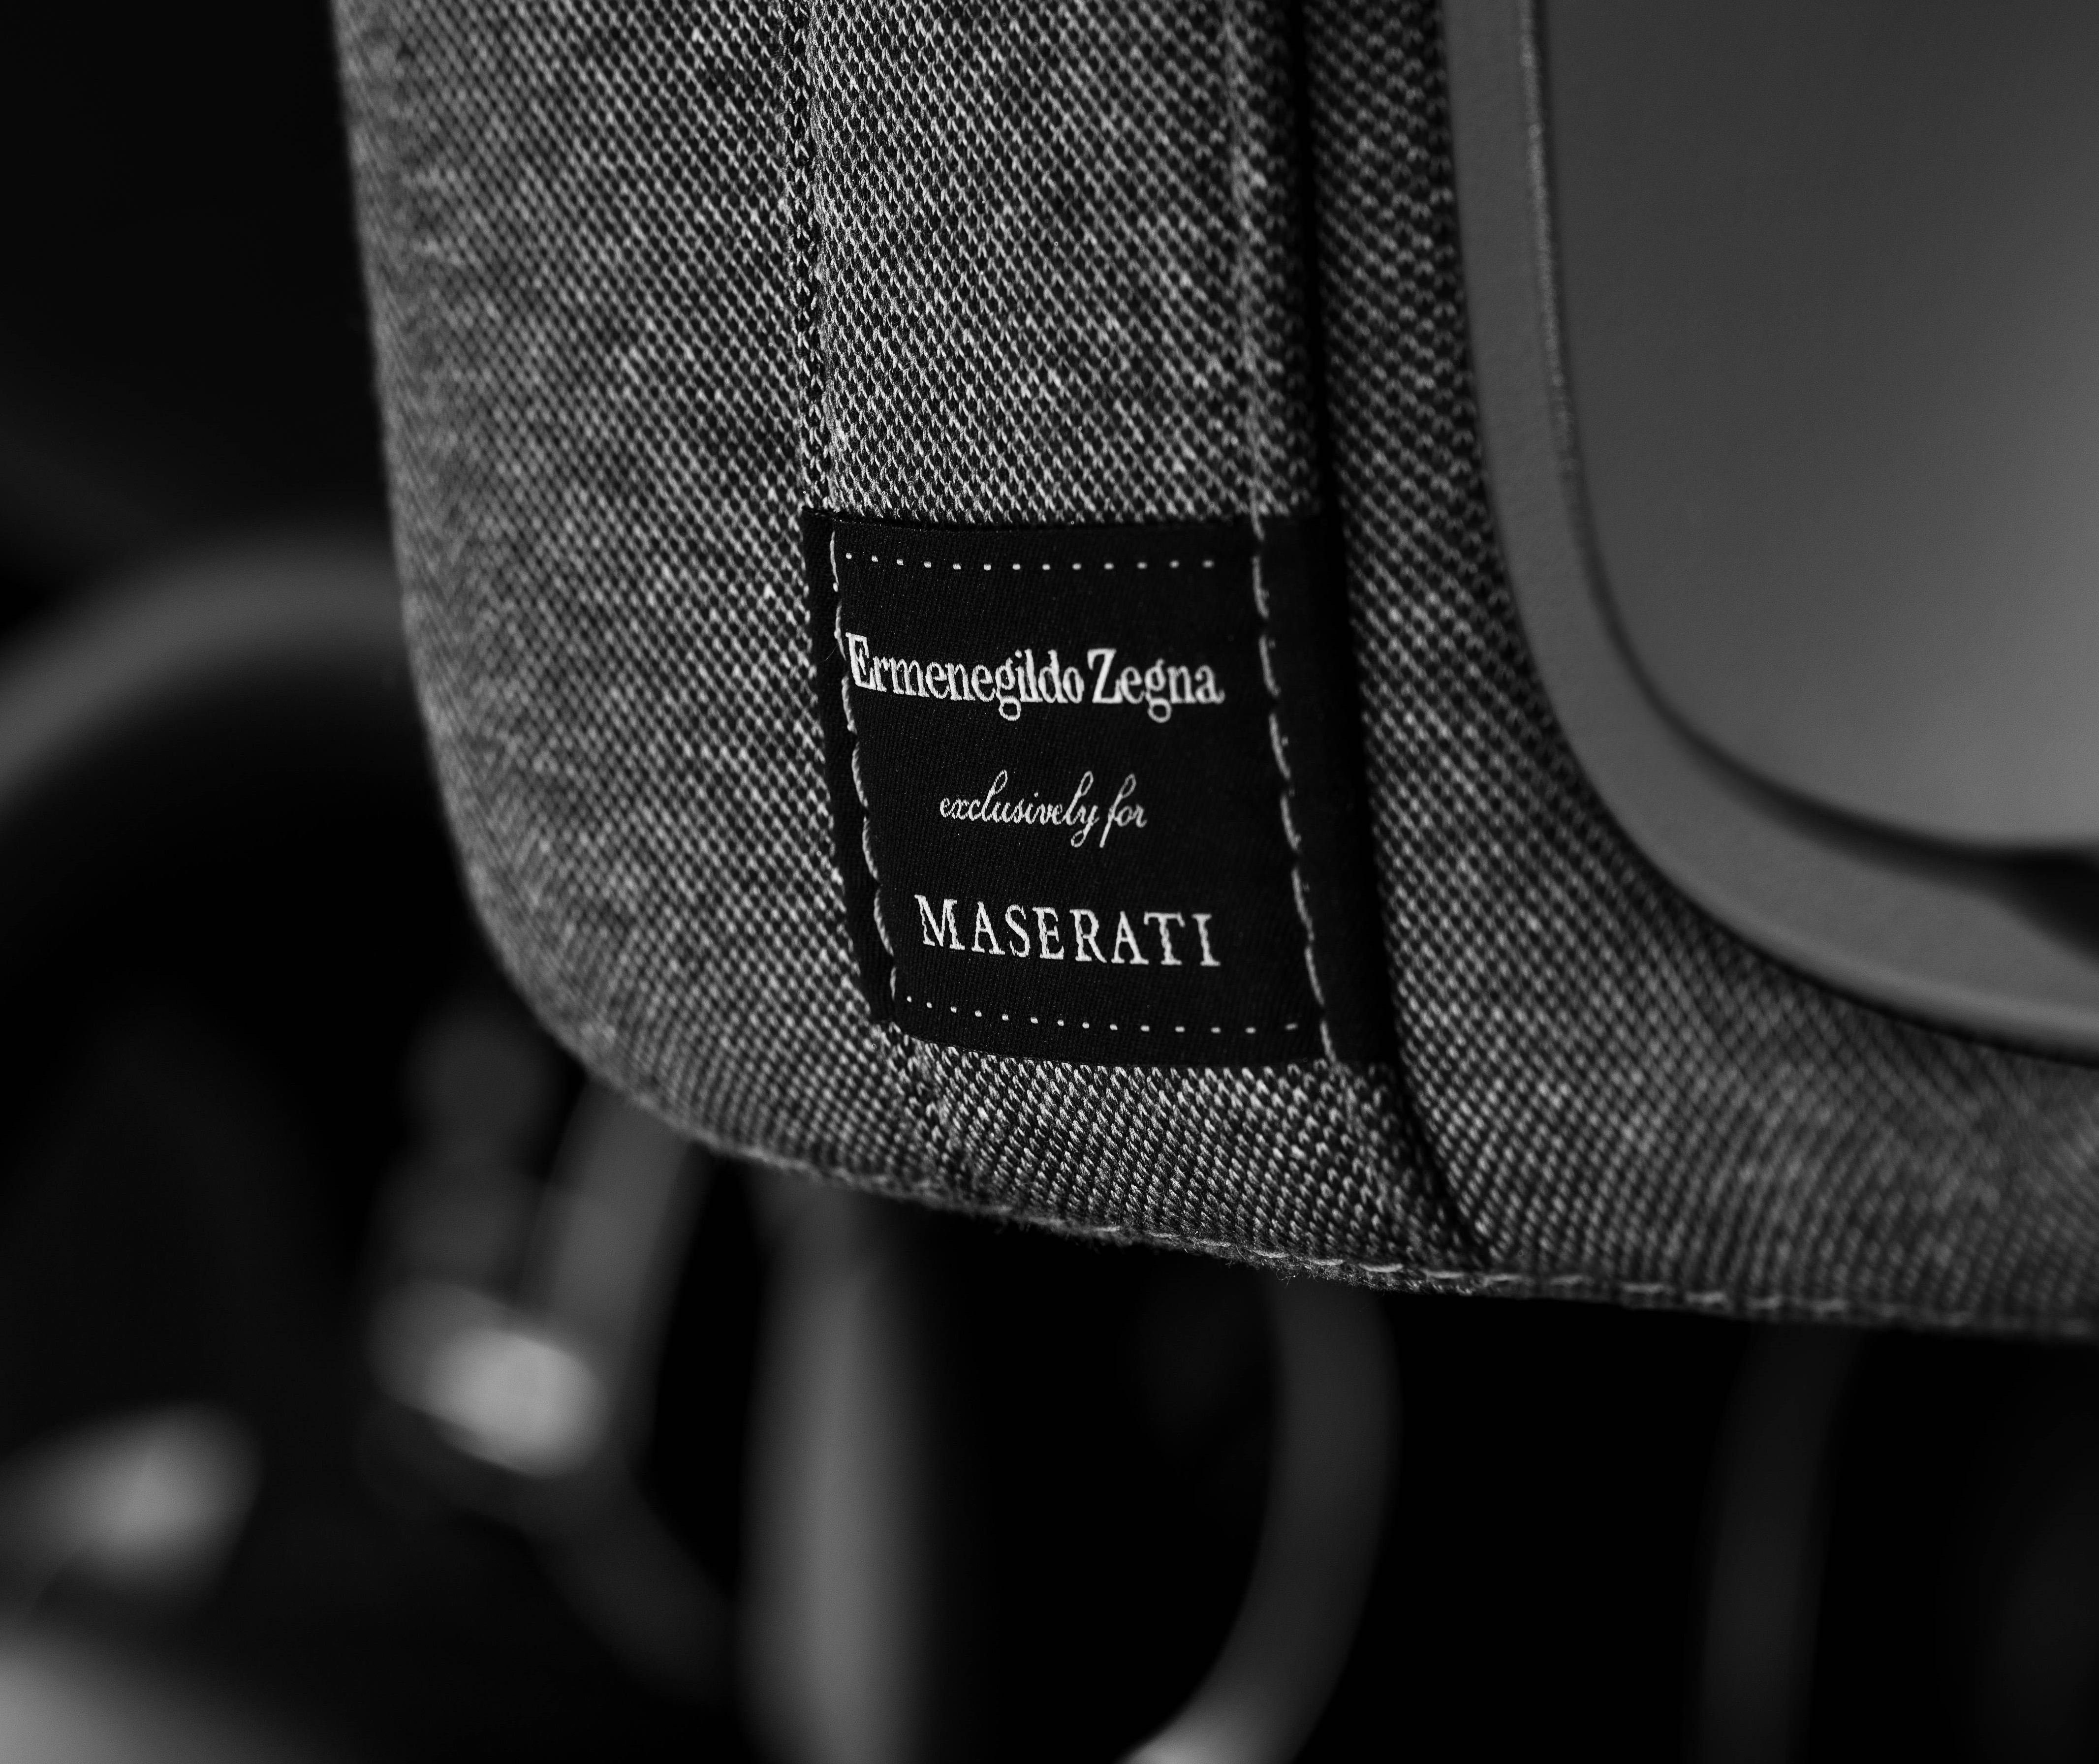 Ermenegildo Zegna & Maserati